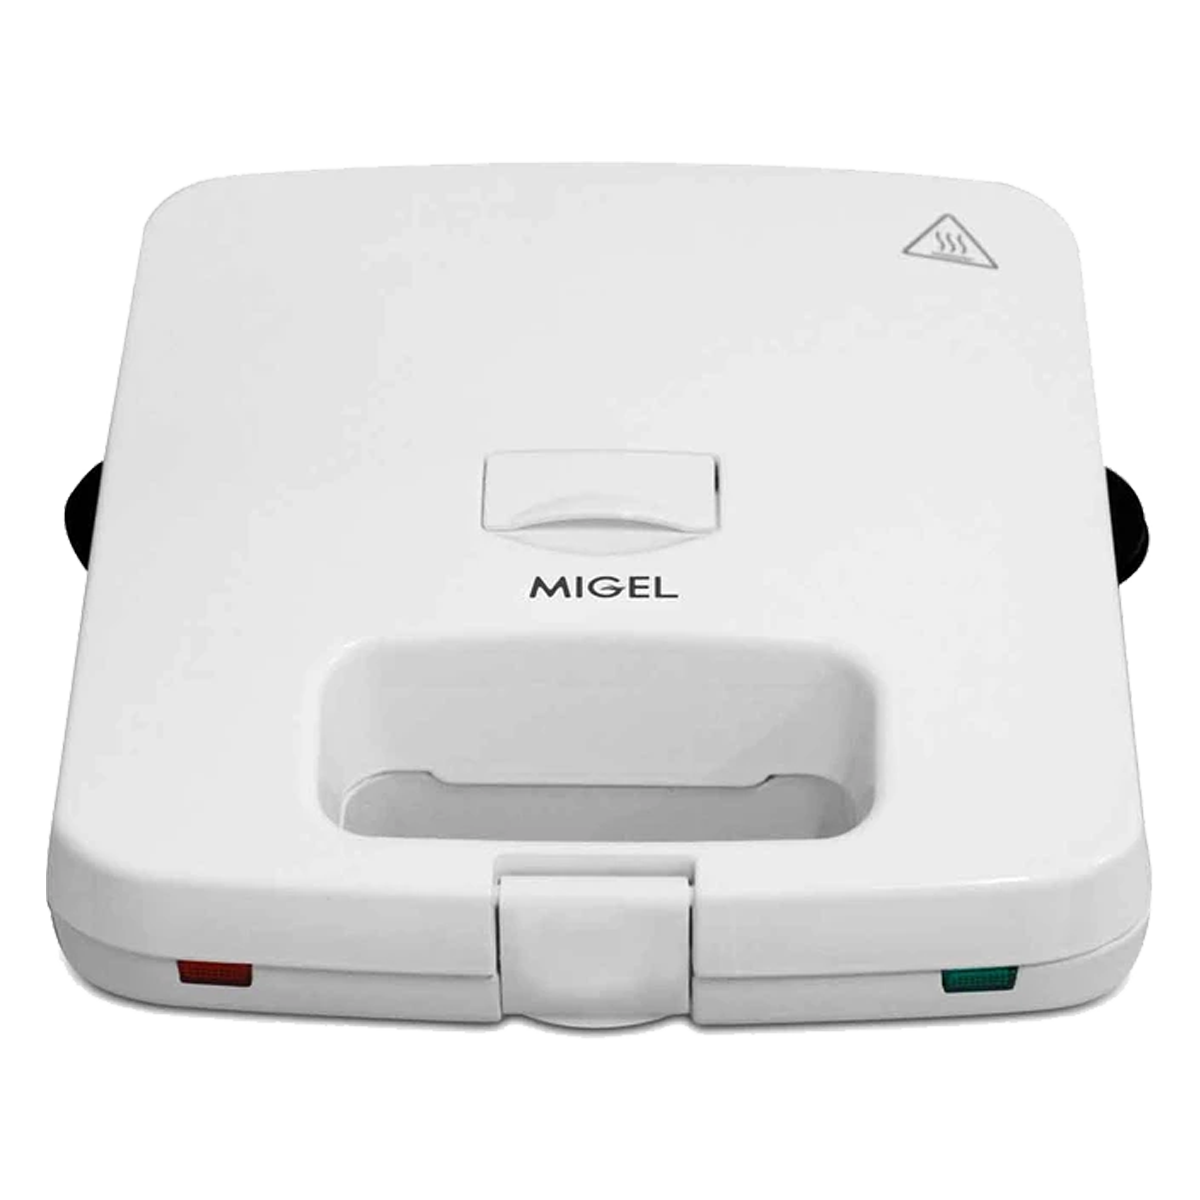  ساندویچ ساز میگل مدل GSM 200-سفید